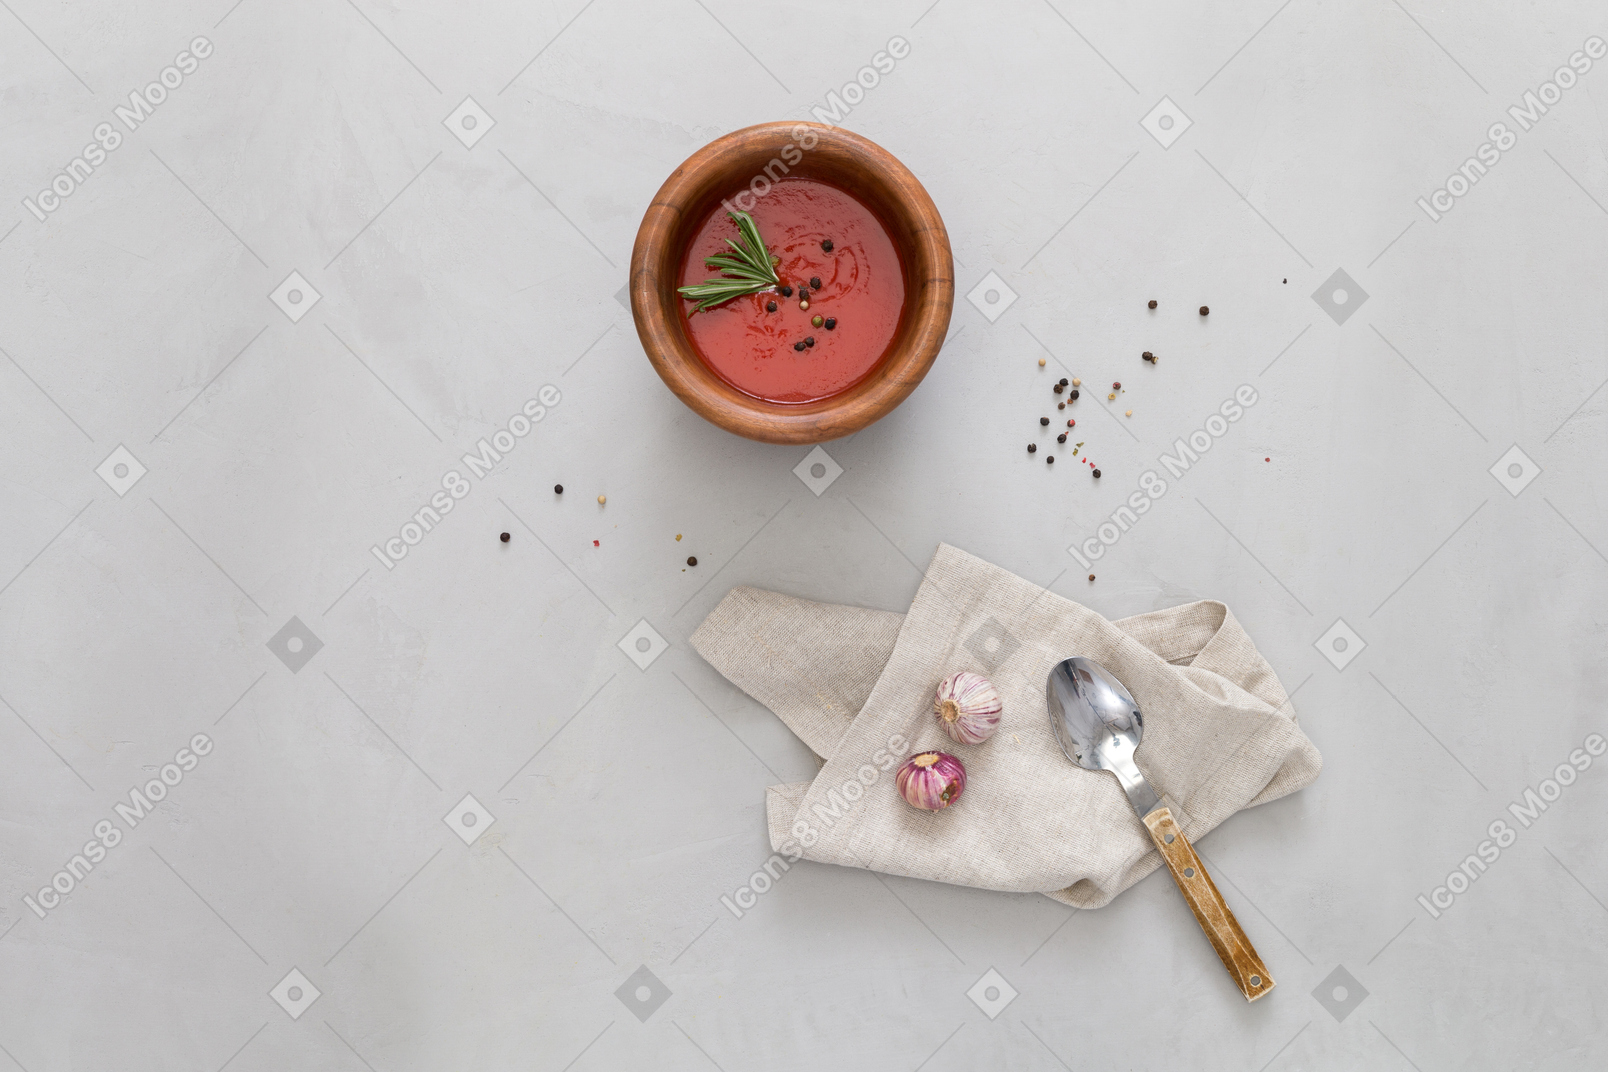 Un bol de gazpacho, un poco de ajo y una cuchara.